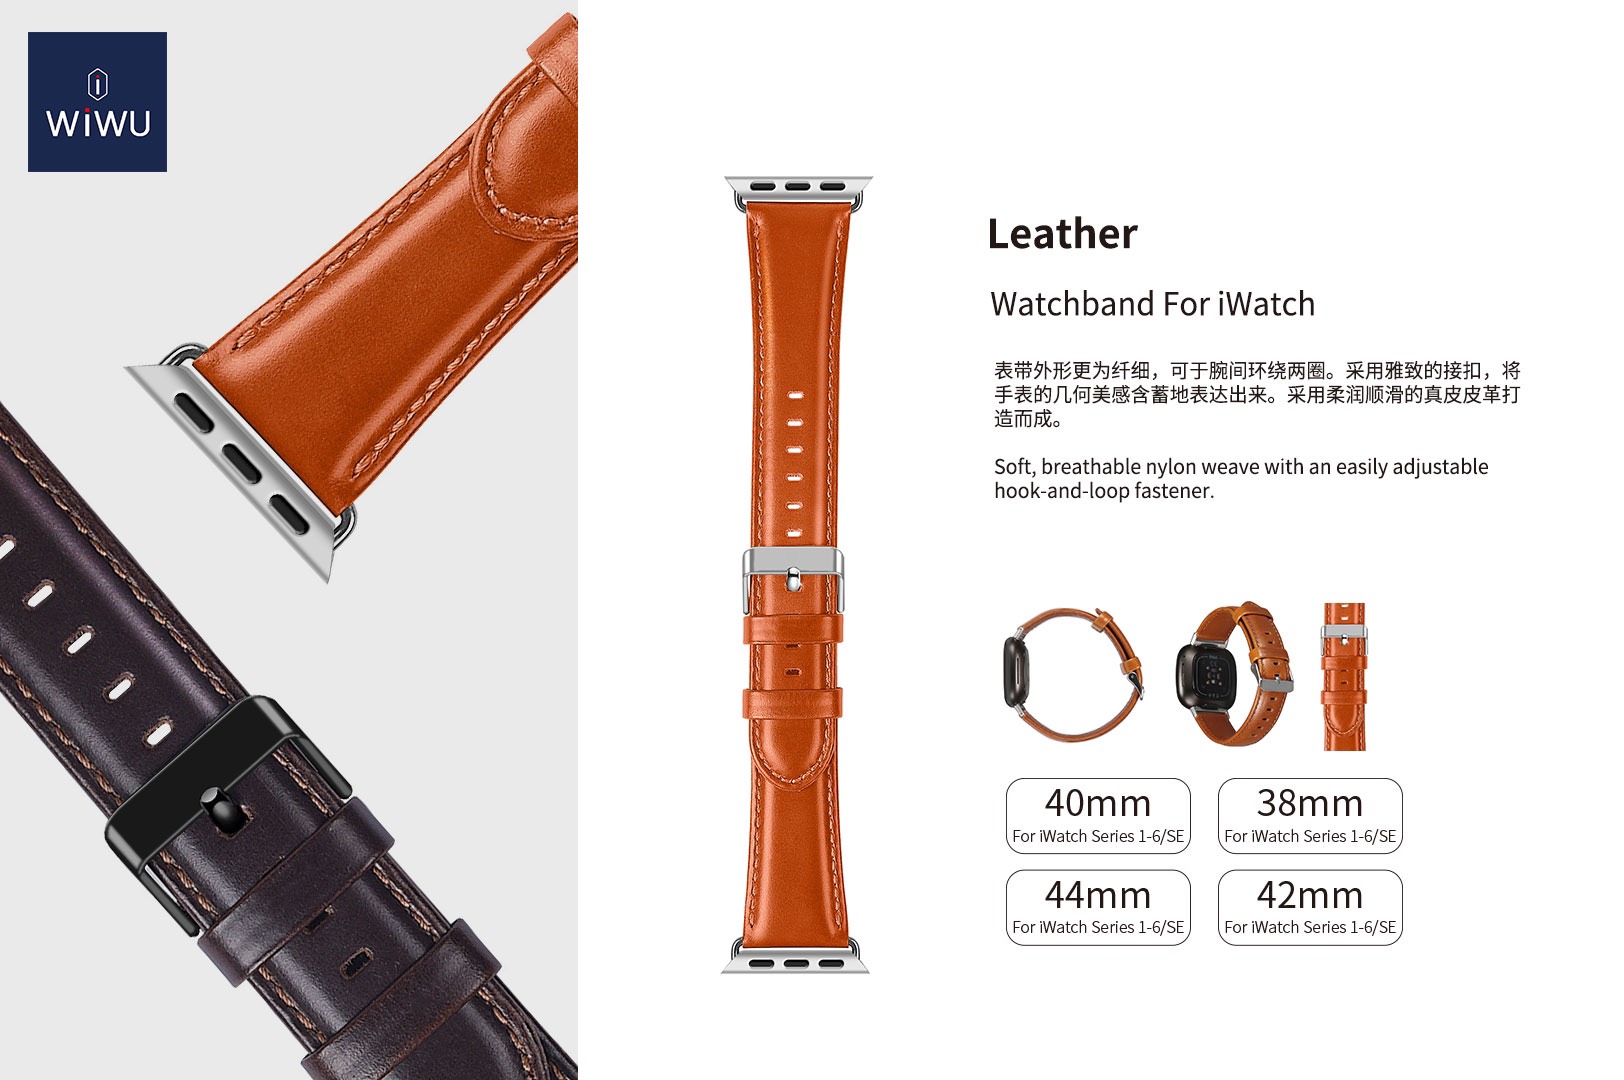 Dây Da Đồng Hồ Wiwu Leather Dành Cho Đồng Hồ Thông Minh Được Làm Bằng Da Bê Thủ Công Với Nhiều Màu Sắc - Hàng Chính Hãng